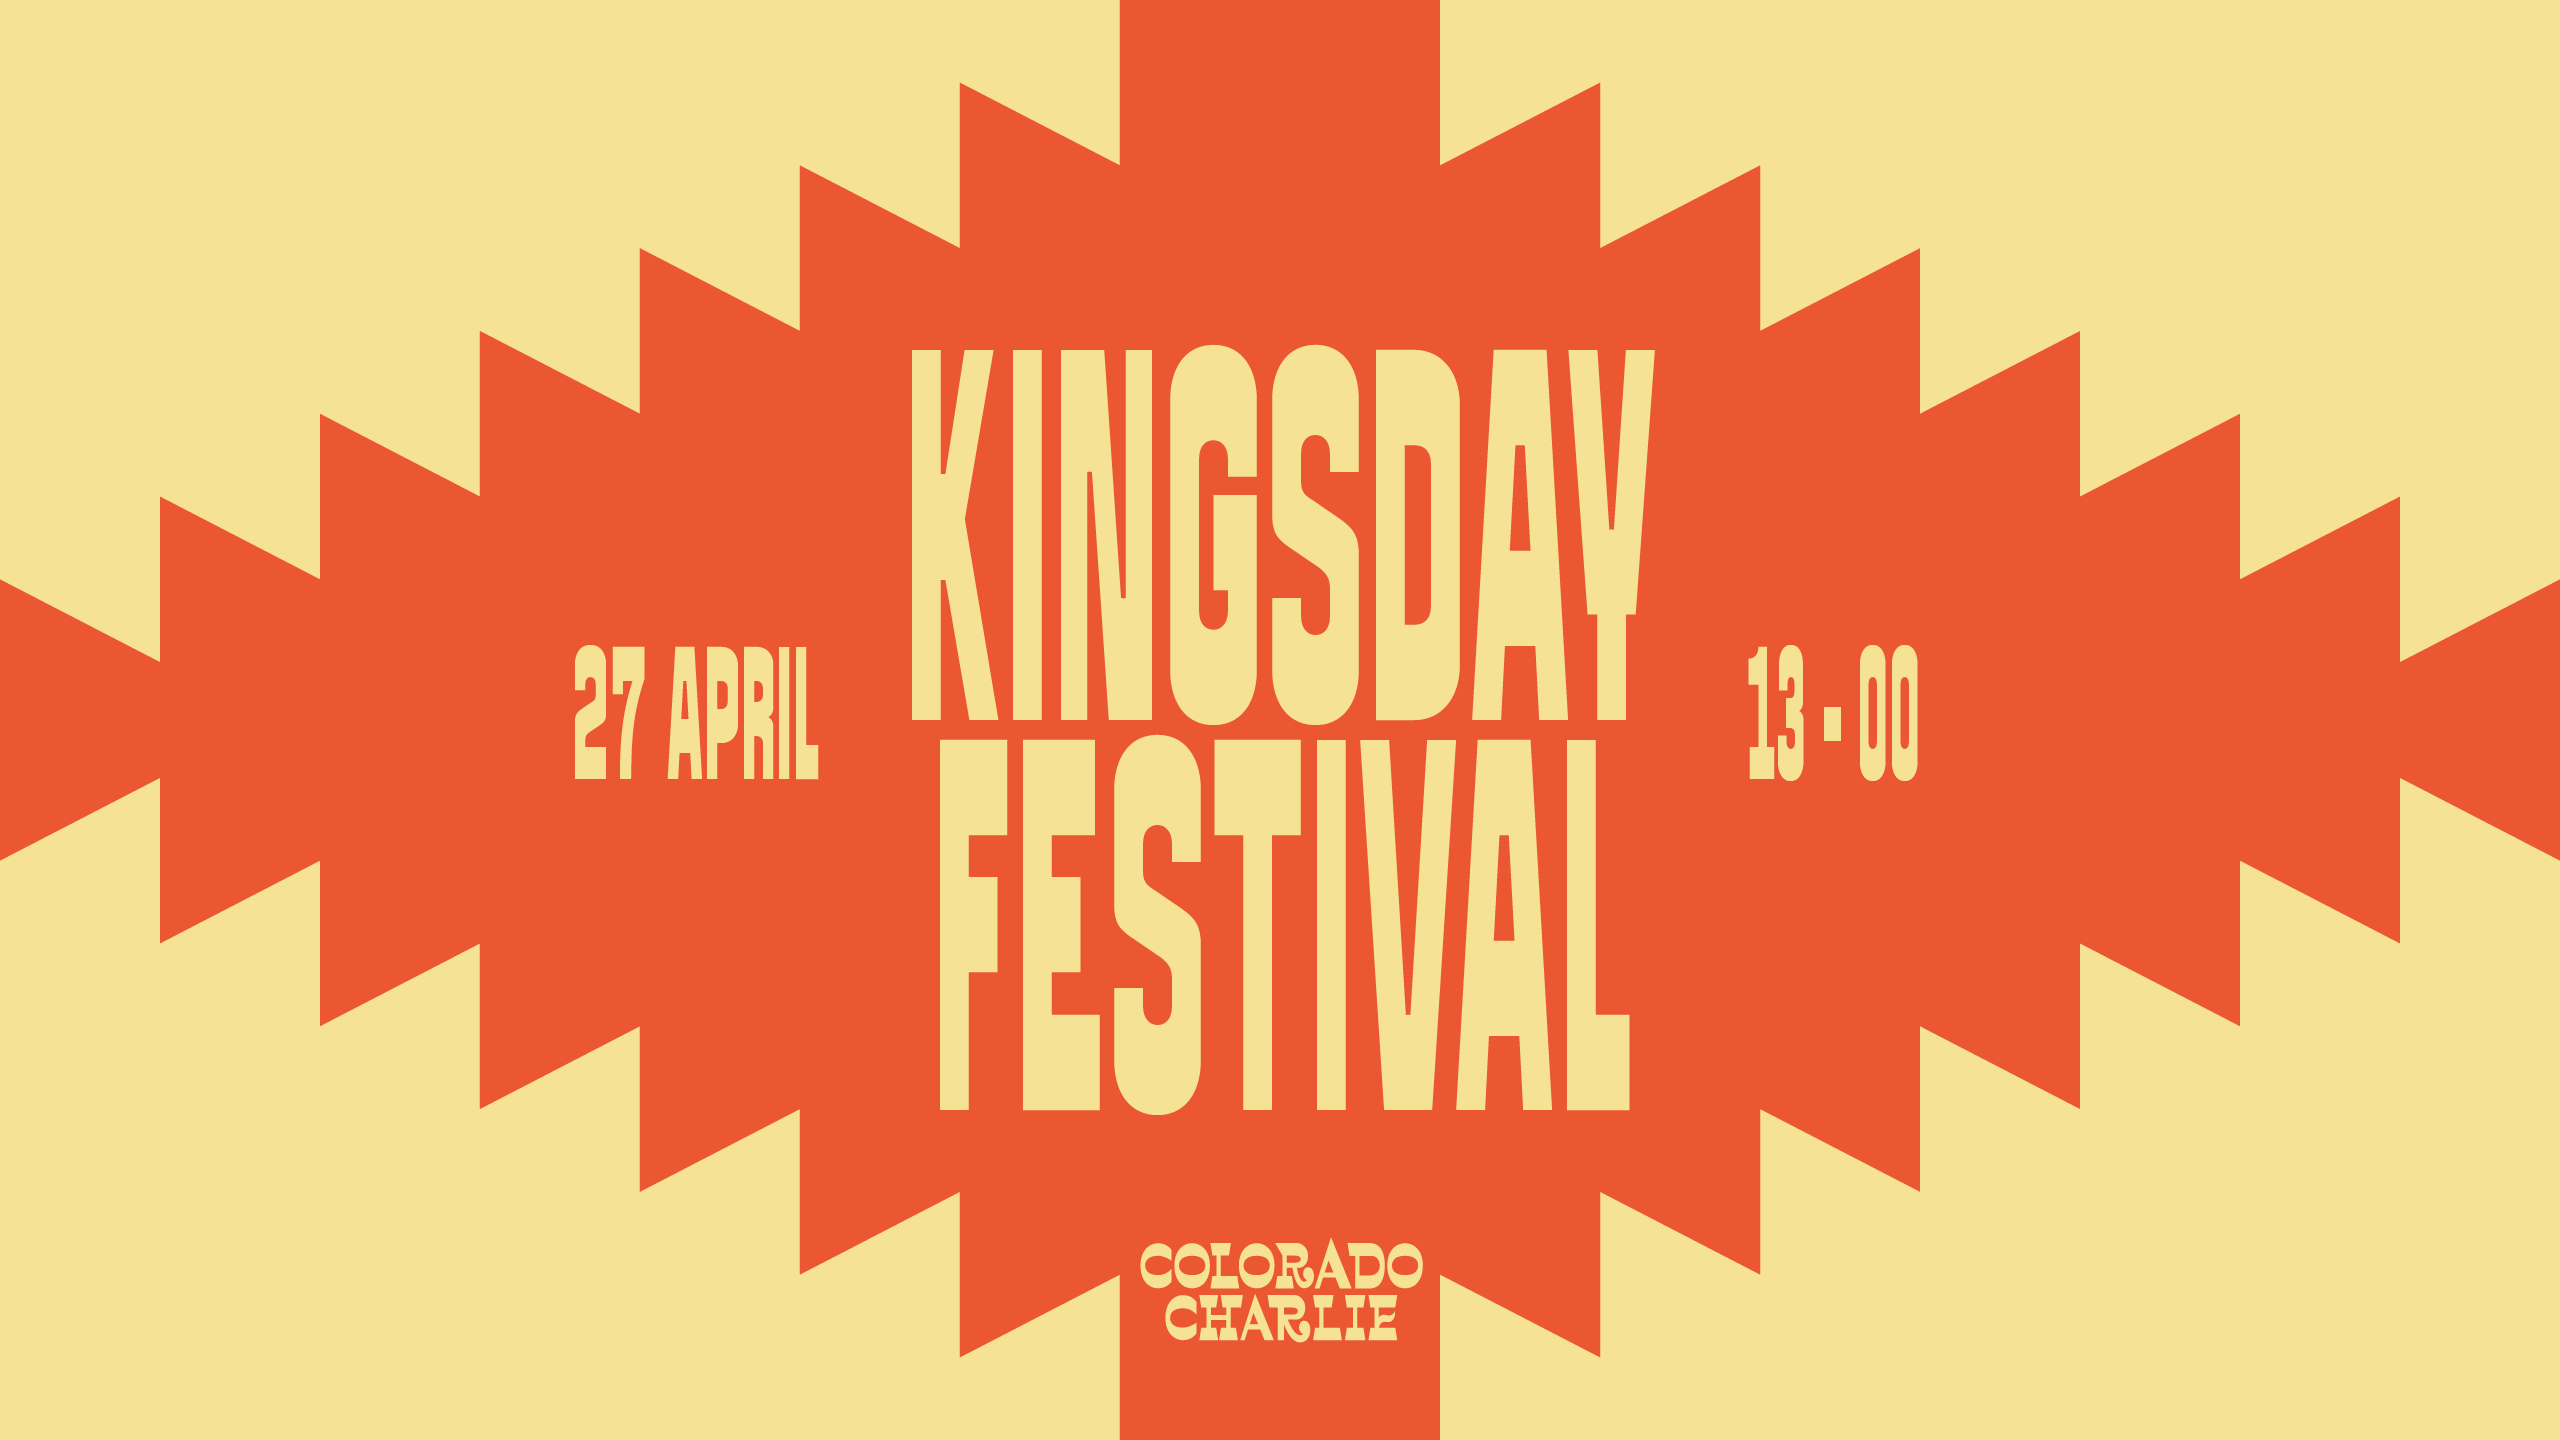 Colorado Charlie - Kingsday Festival - Página frontal